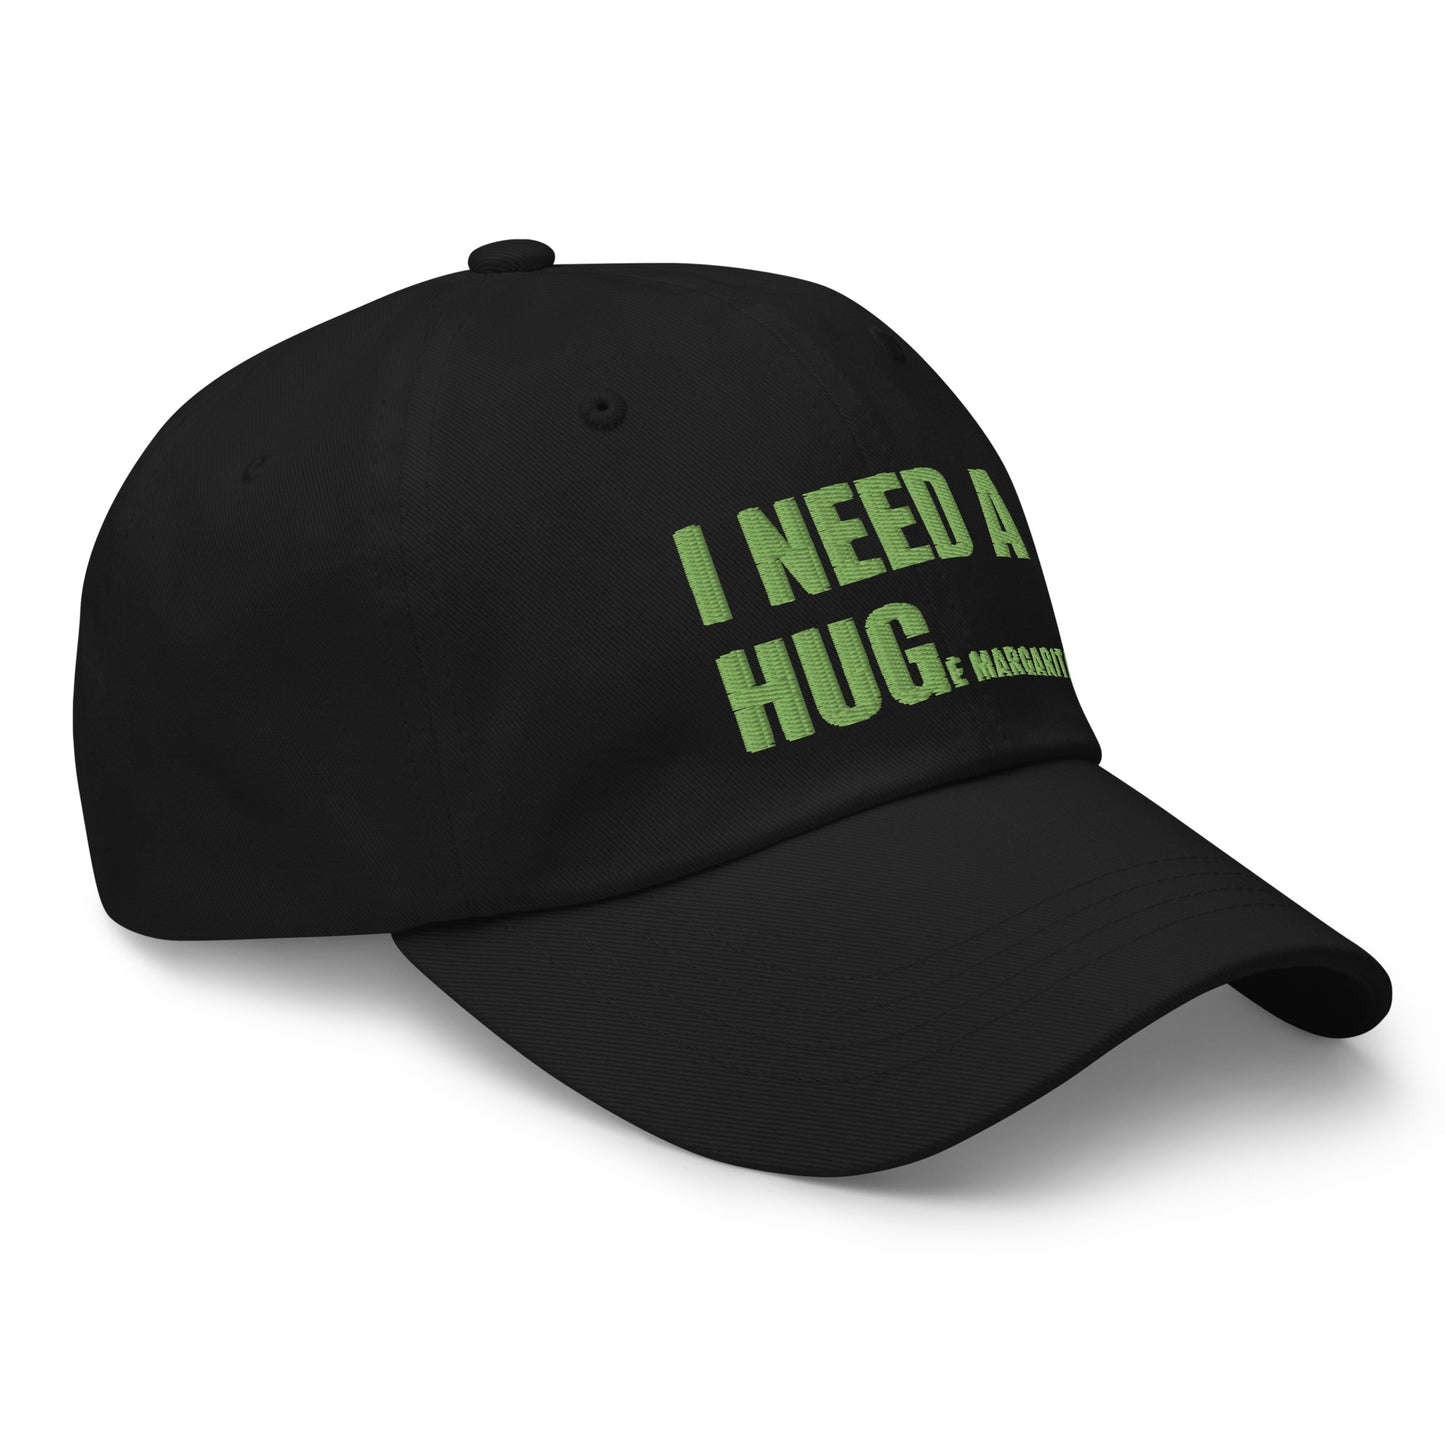 I Need a Hug Hat